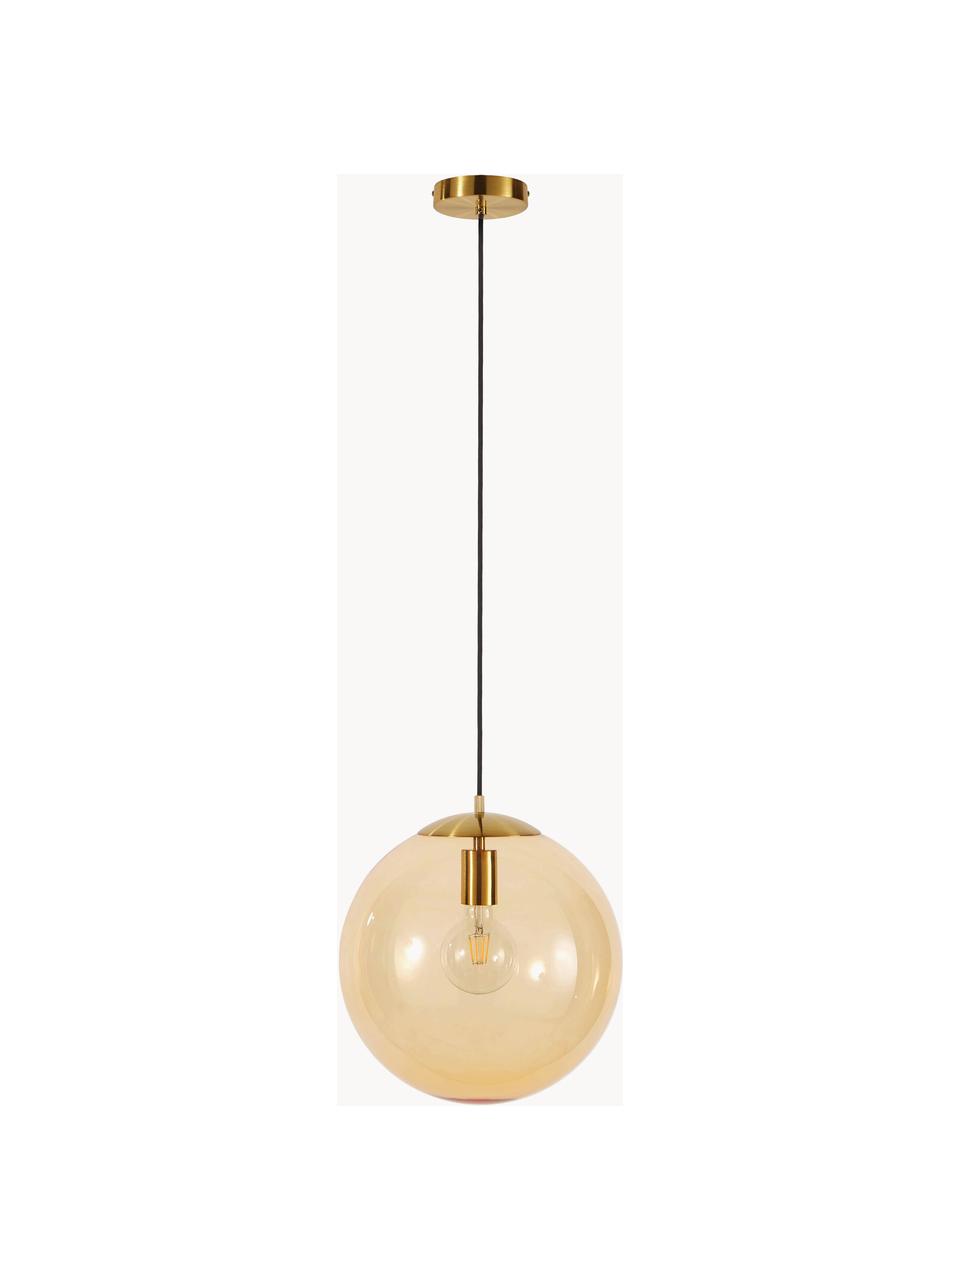 Lámpara de techo Bao, Pantalla: vidrio, Anclaje: metal galvanizado, Cable: cubierto en tela, Marrón claro, dorado, Ø 35 cm